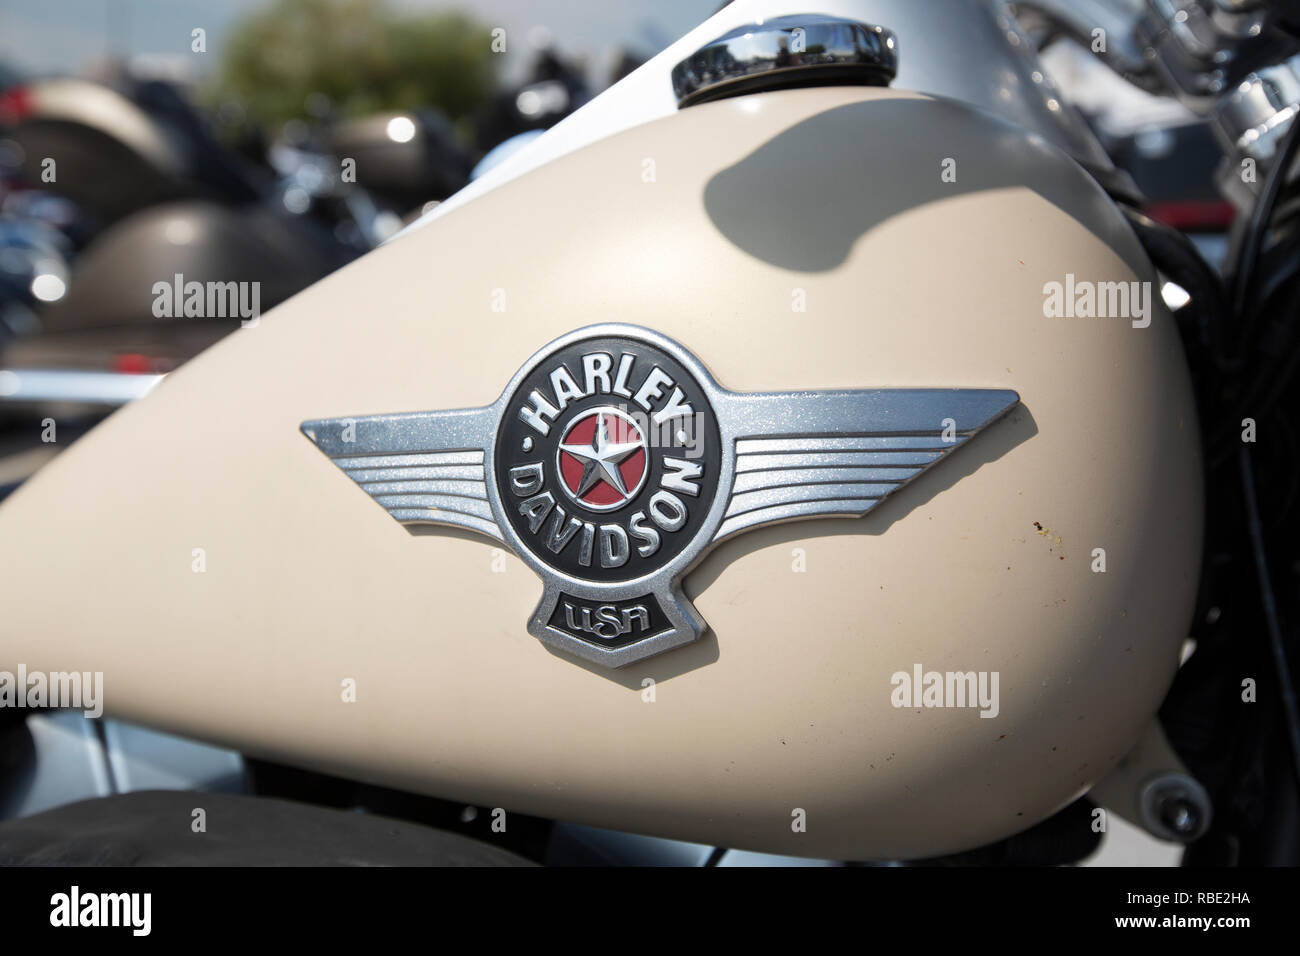 Harley Davidson Gas Tank Stockfotos Und Bilder Kaufen Alamy